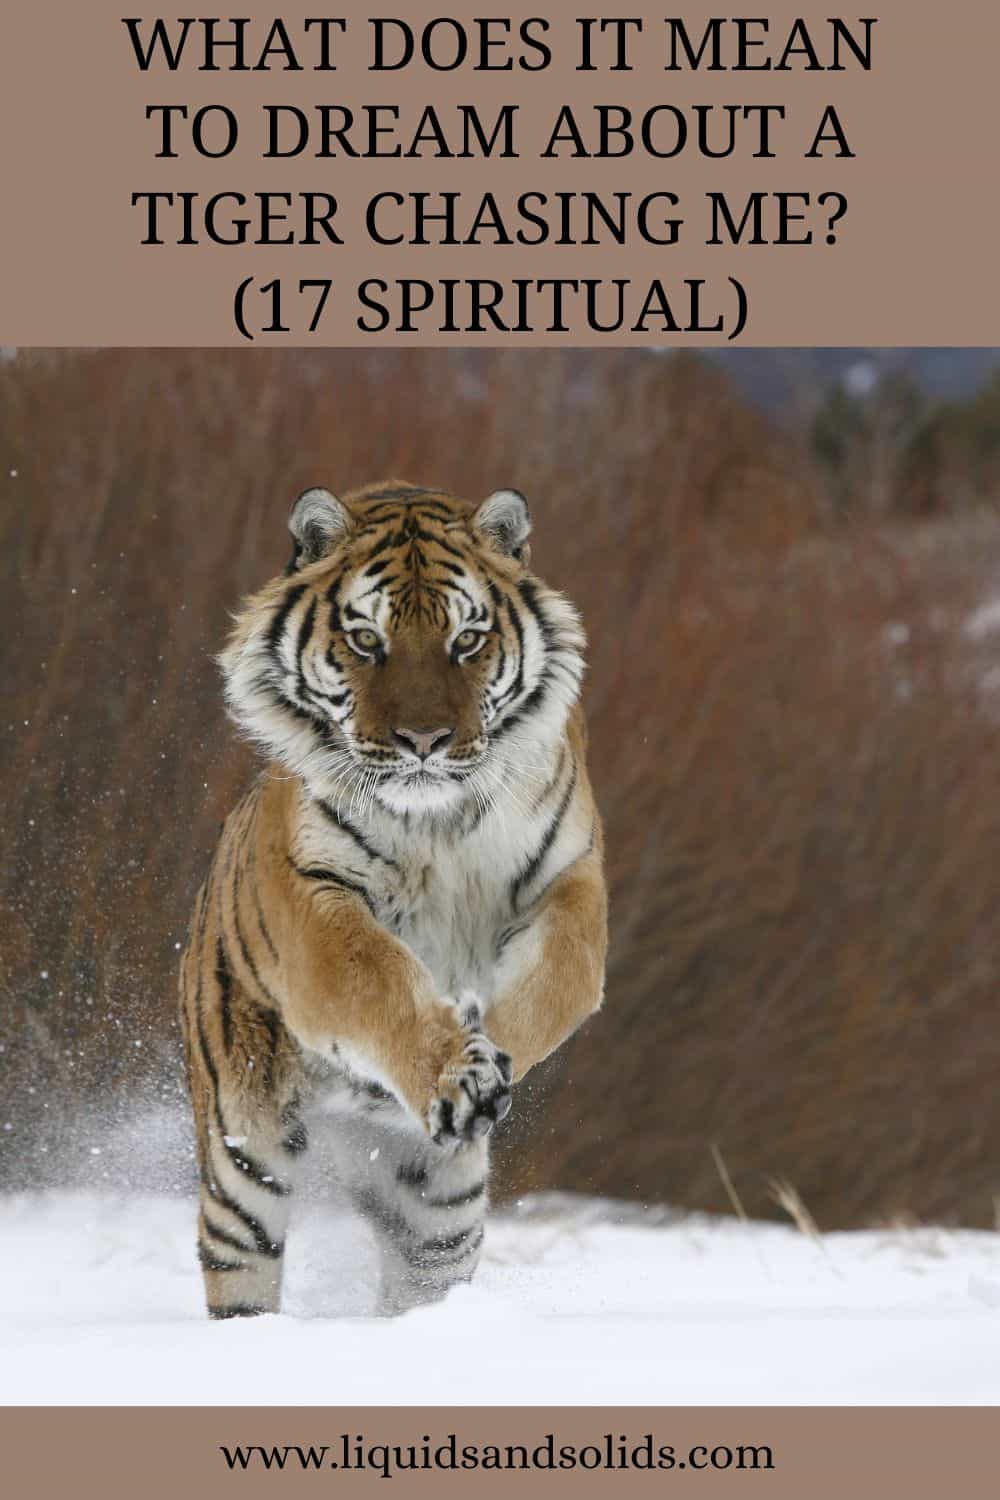  Álom a tigrisről, aki üldöz téged? (17 spirituális jelentés)